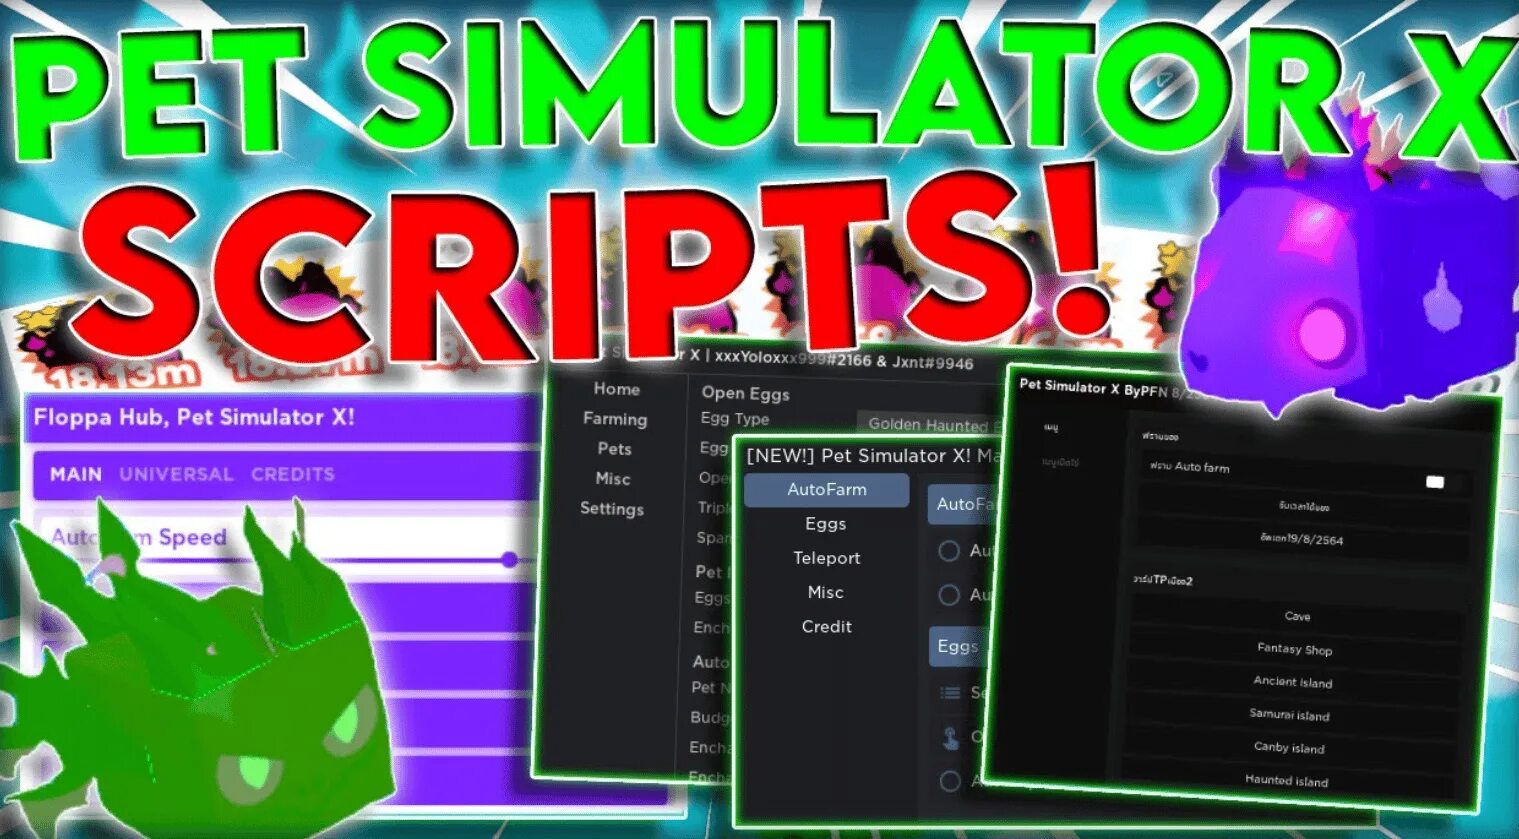 Pet Simulator x script. Pet Simulator script. Pet Simulator x script Hack. Roblox Pet Simulator x Hack. Скрипт на pet simulator